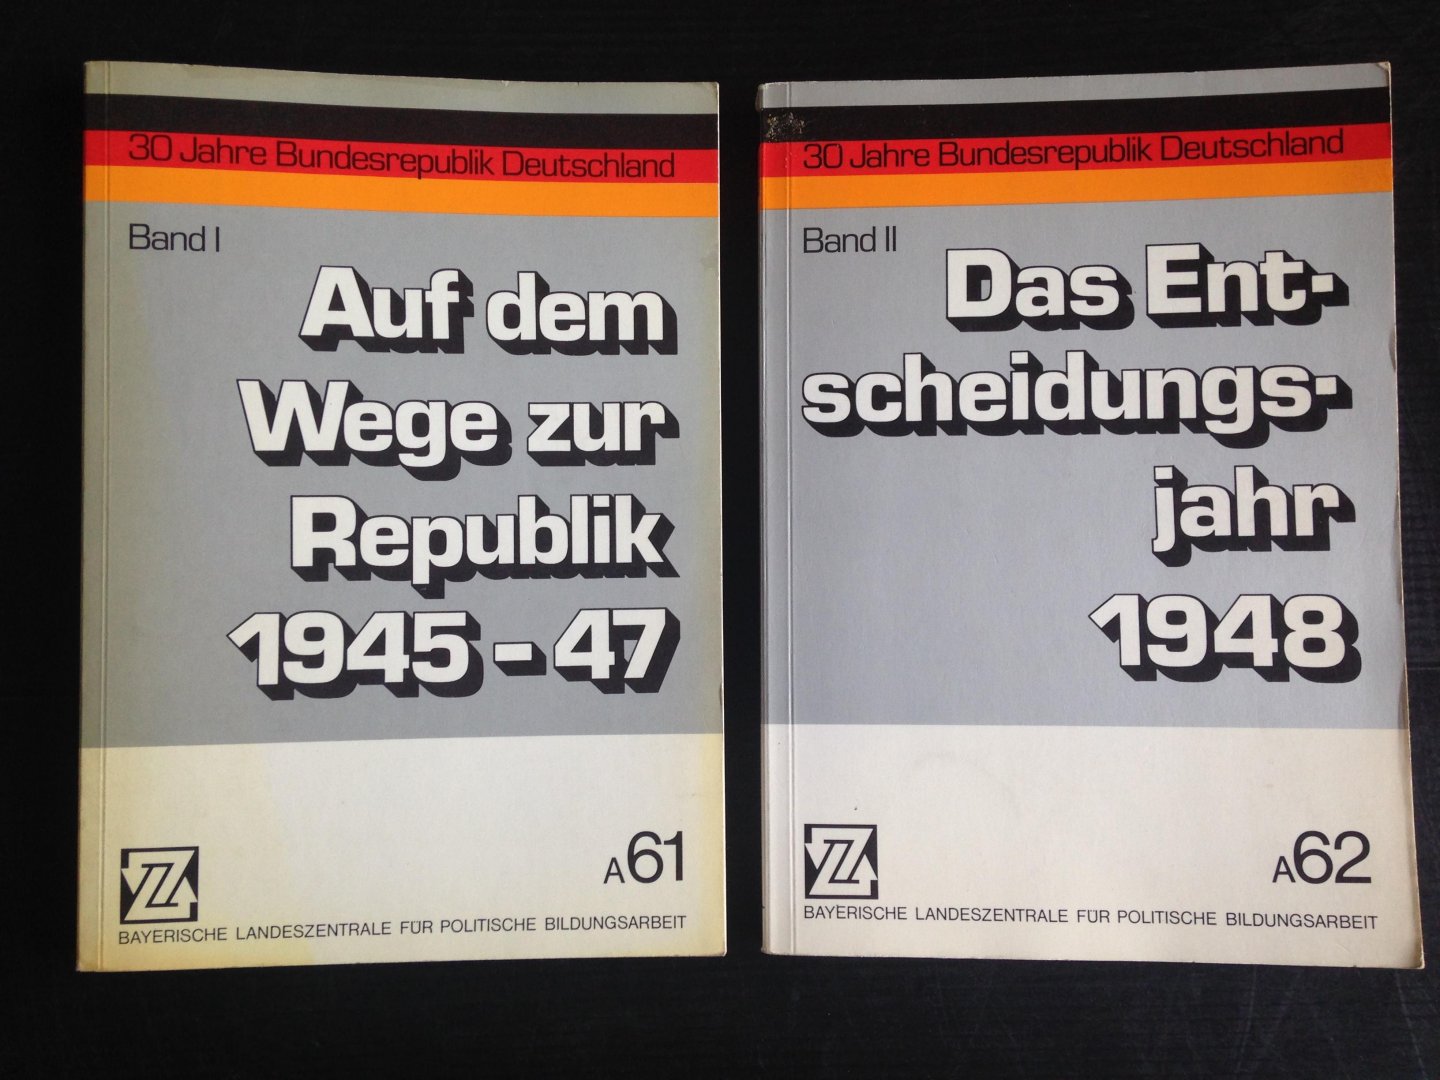  - 30 Jahre Bundesrepublik Deutschland, 2 delen: Auf dem Wege zur Republik 1945-47, Das Entscheidungsjahr 1948